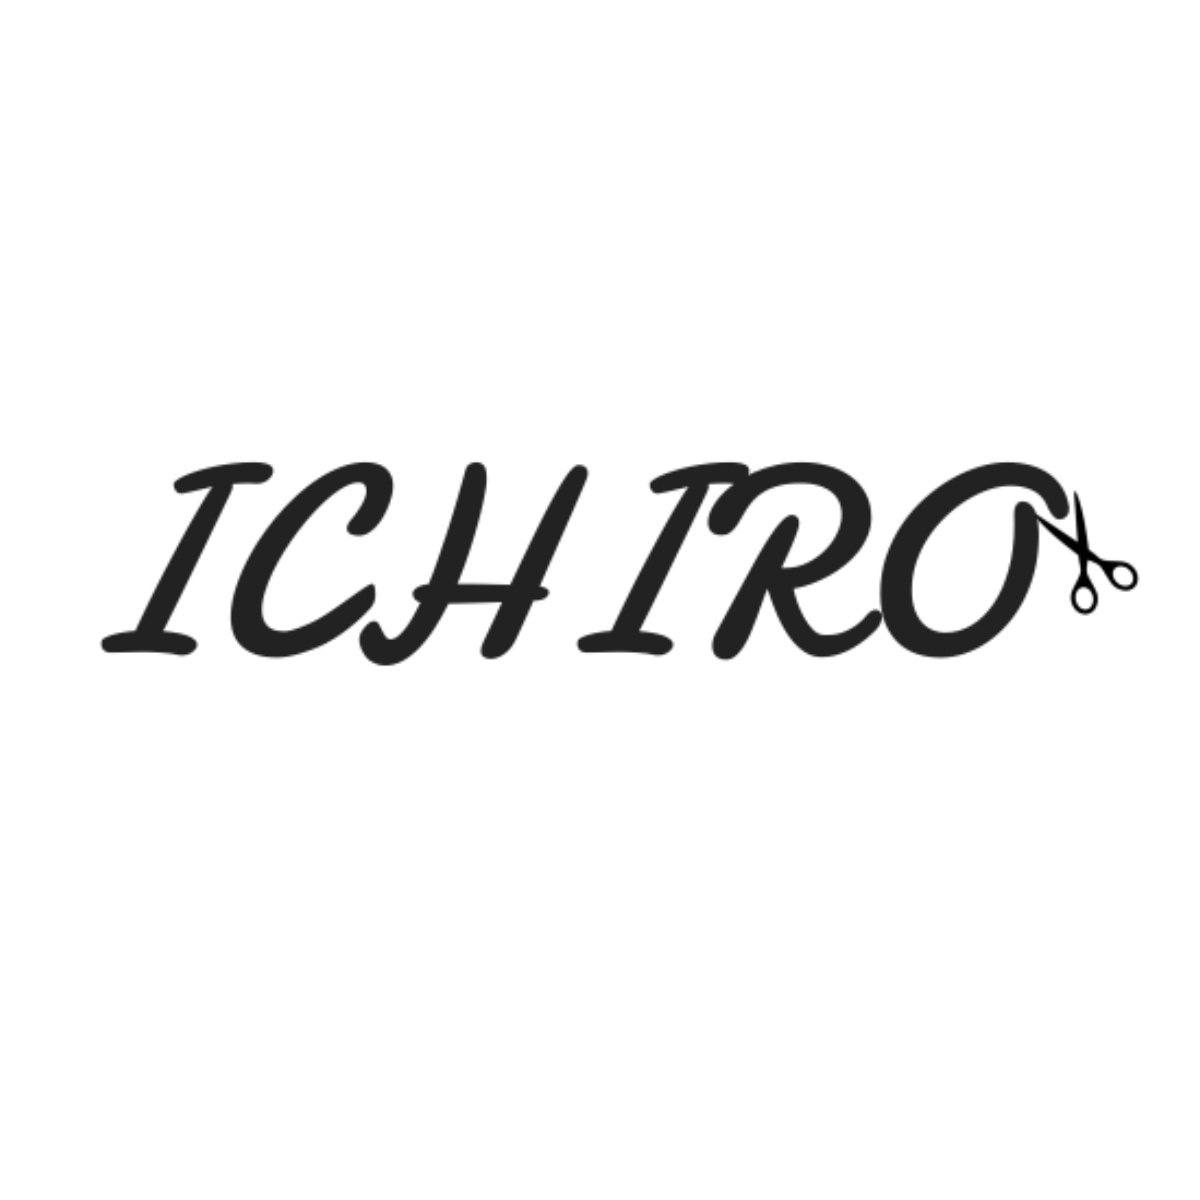 Ichiro Thinning Scissors logo